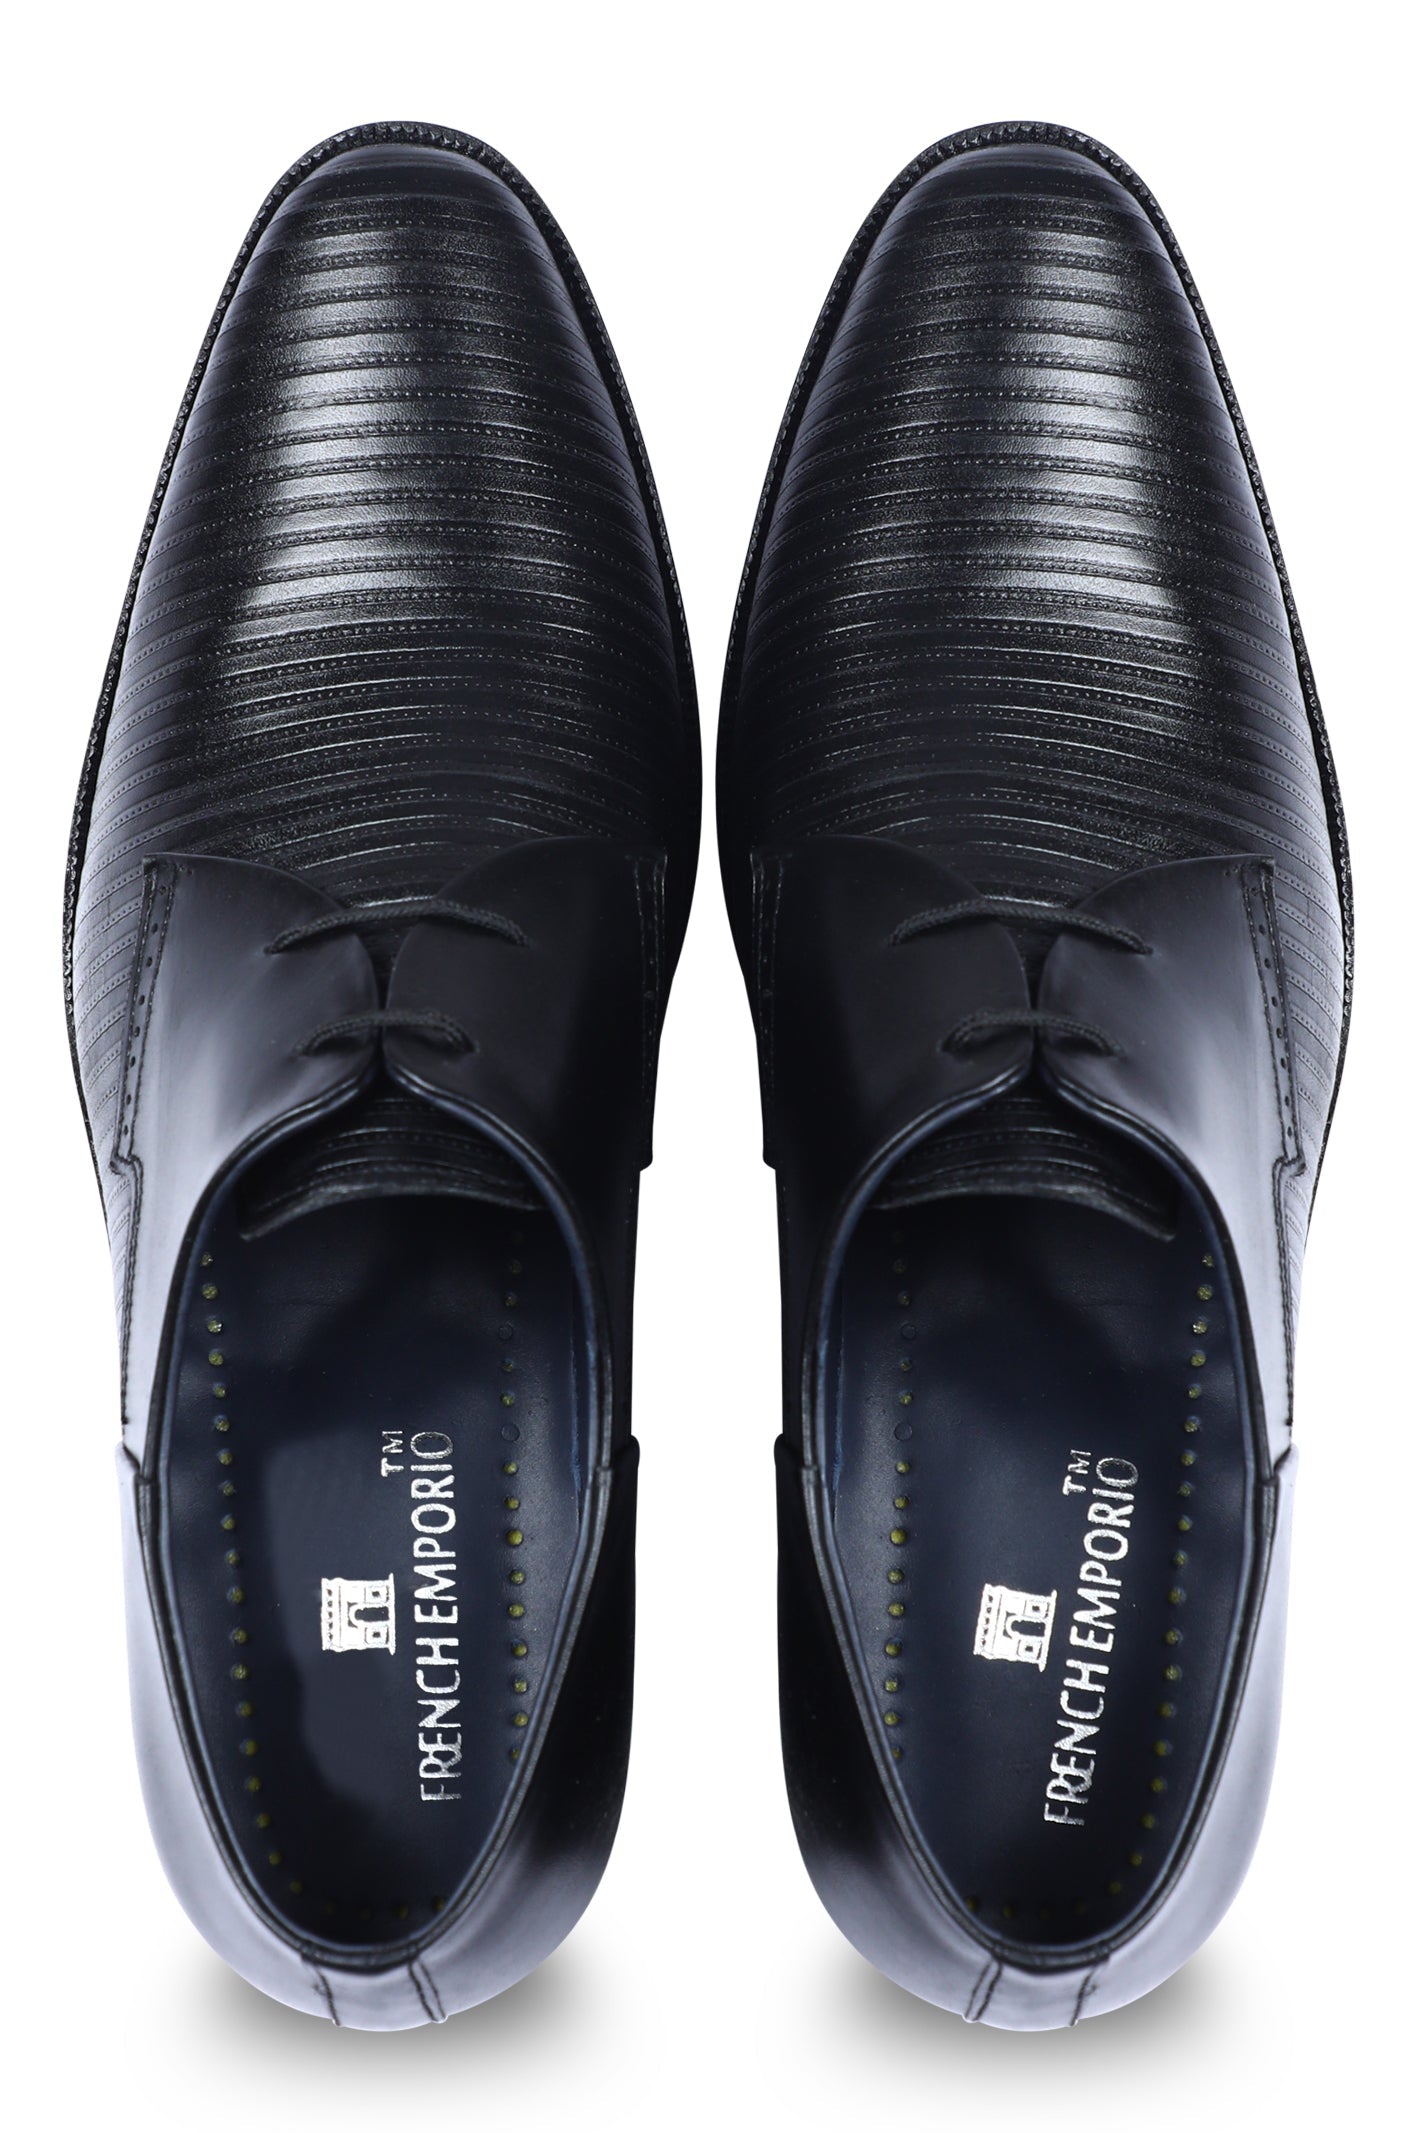 Formal Shoes For Men in Black SKU: SMF-0170-BLACK - Diners